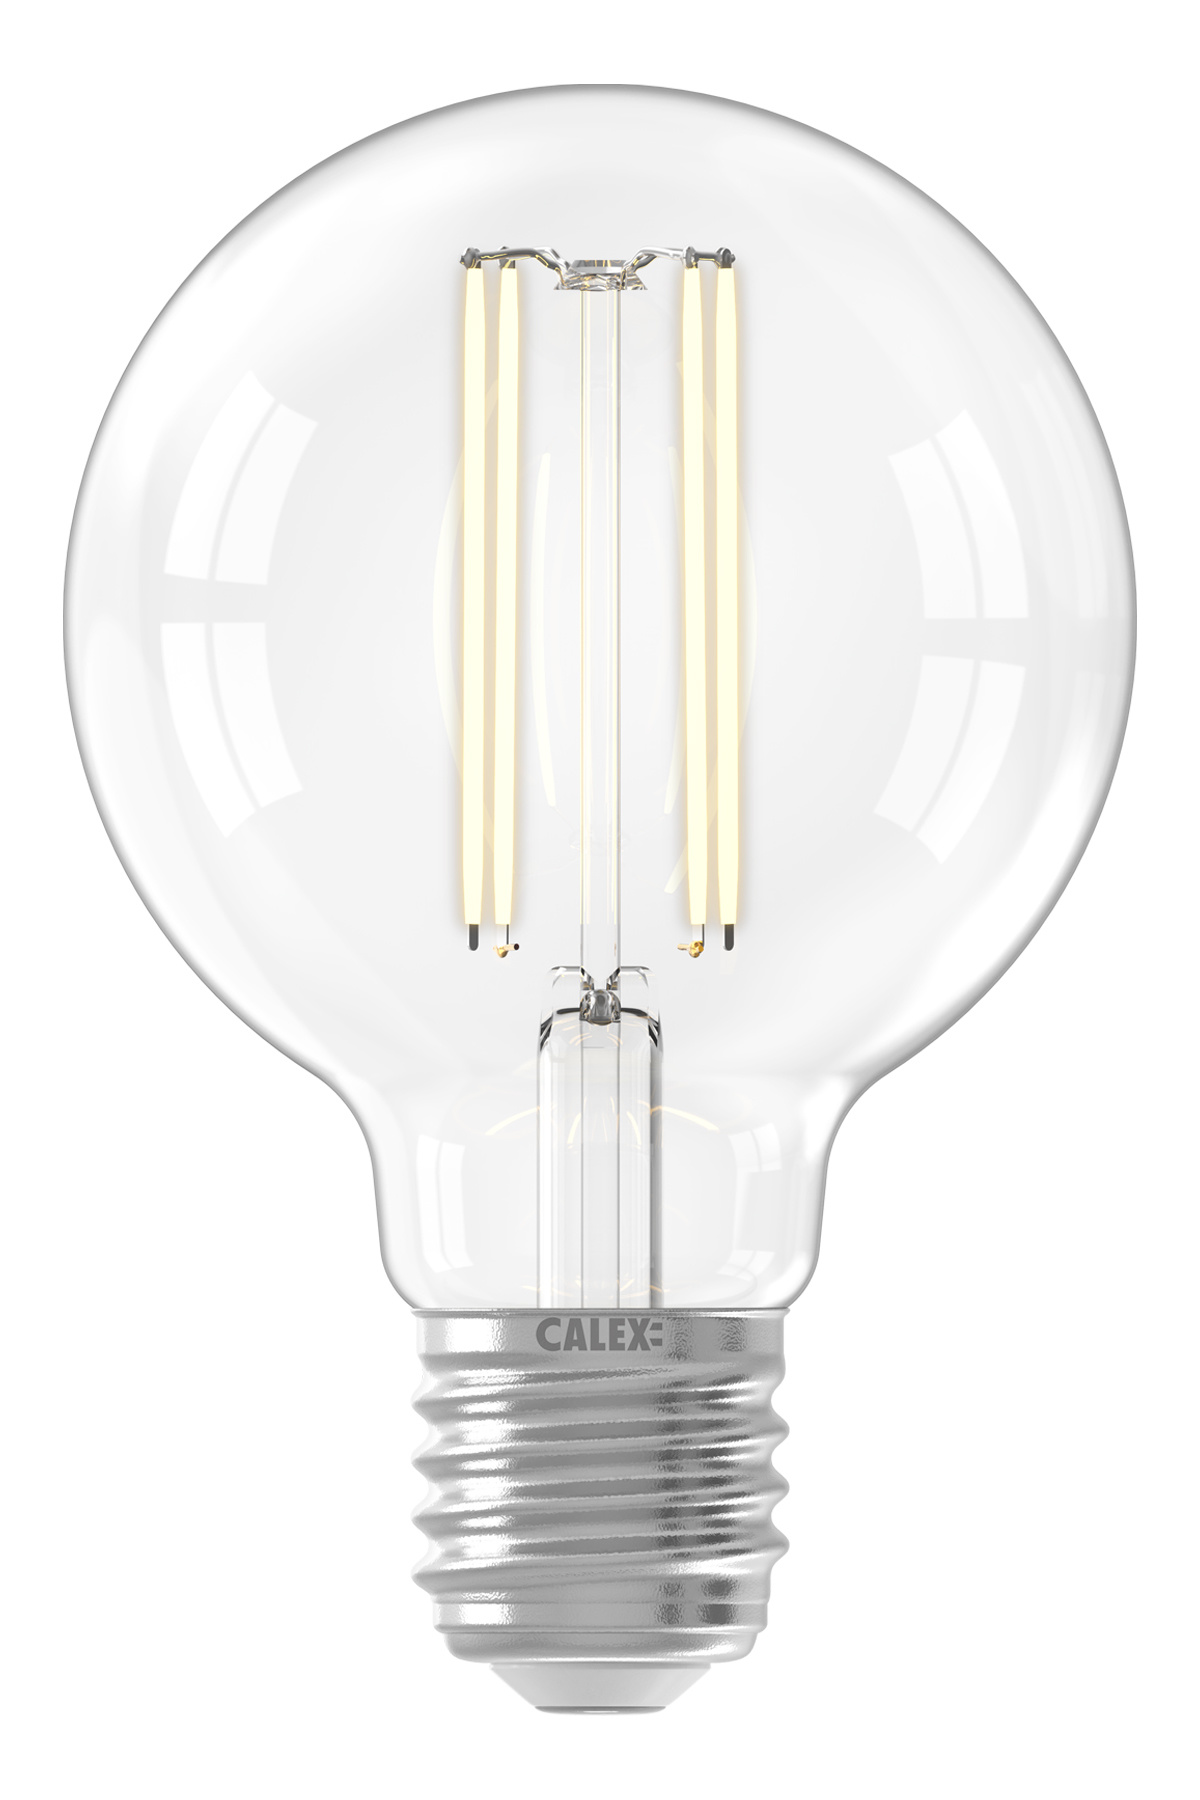 Trekken Blaze Clip vlinder LED lamp globe Calex helder (GLB80 Ø80mm E27) - Kynda Light